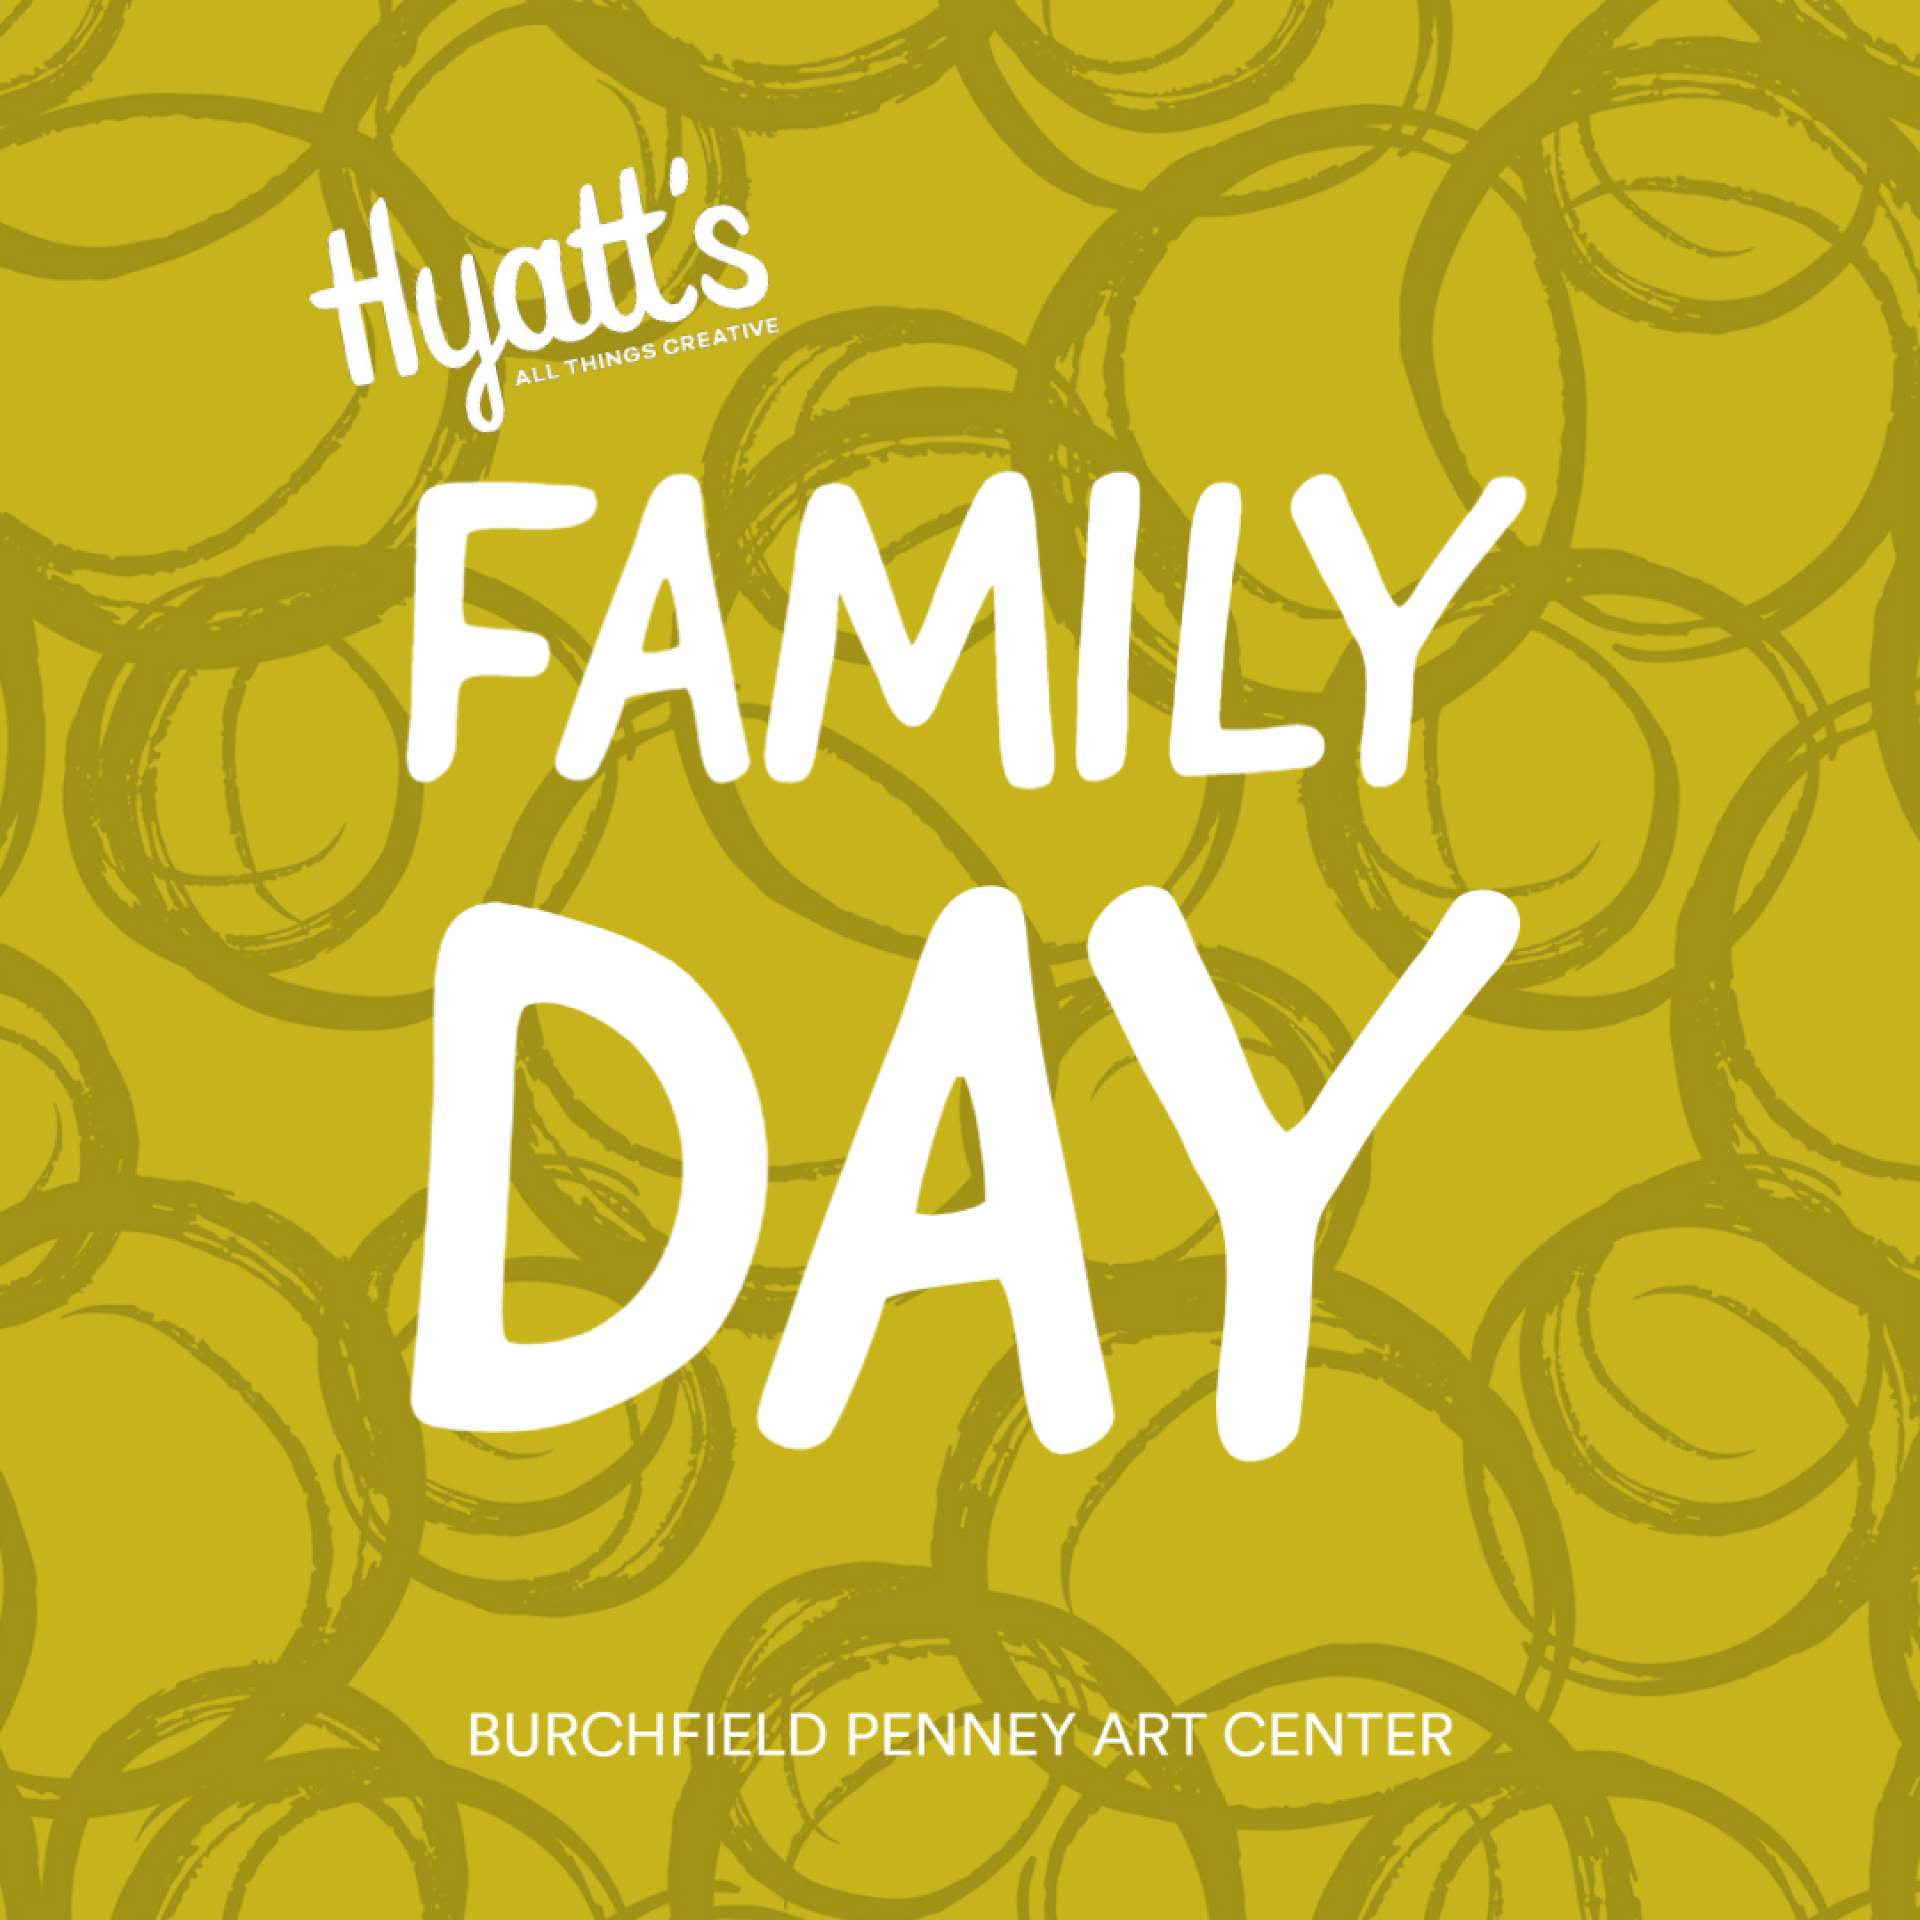 Hyatt's All Things Creative Family Day